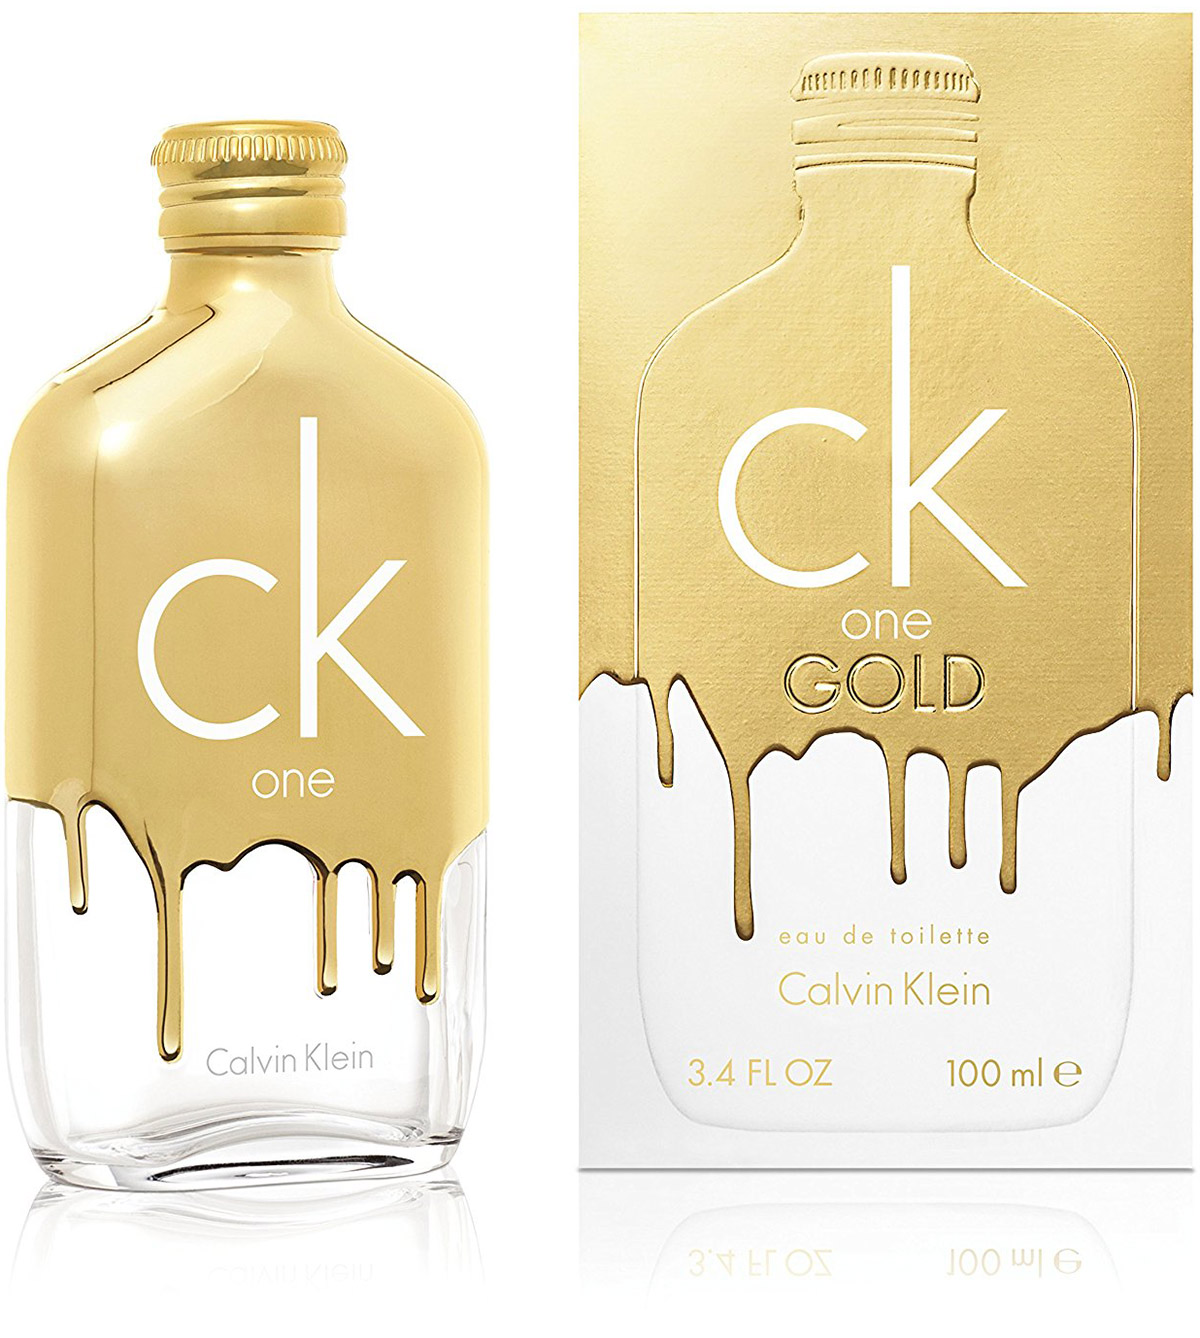 CK One Gold eau de toilette fragrance